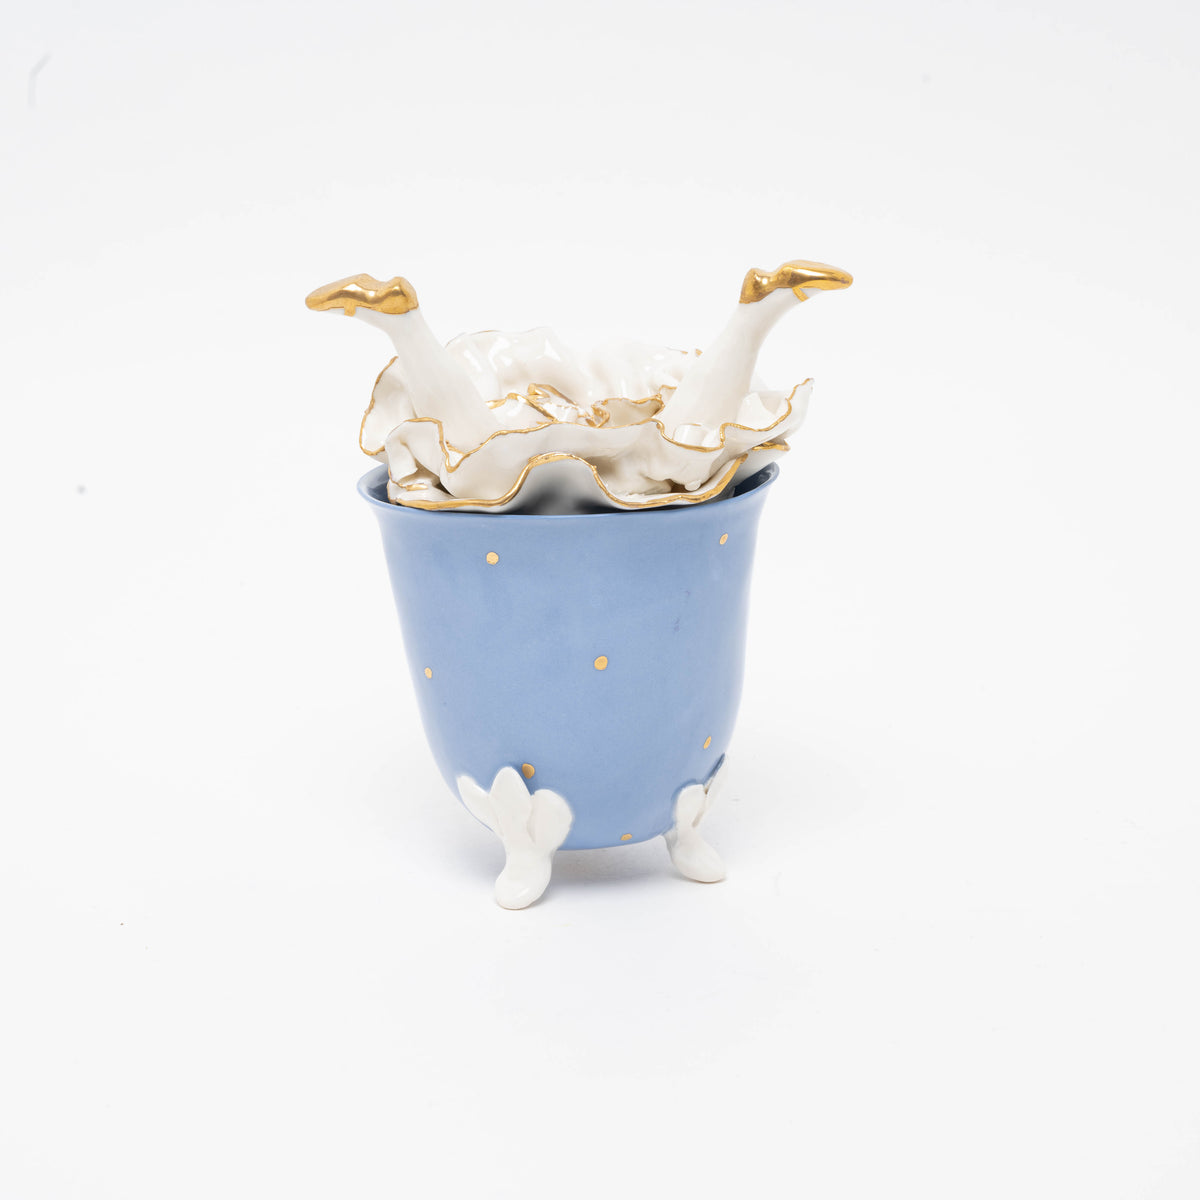 Zuckerdose upsite down aus Porzellan, blau